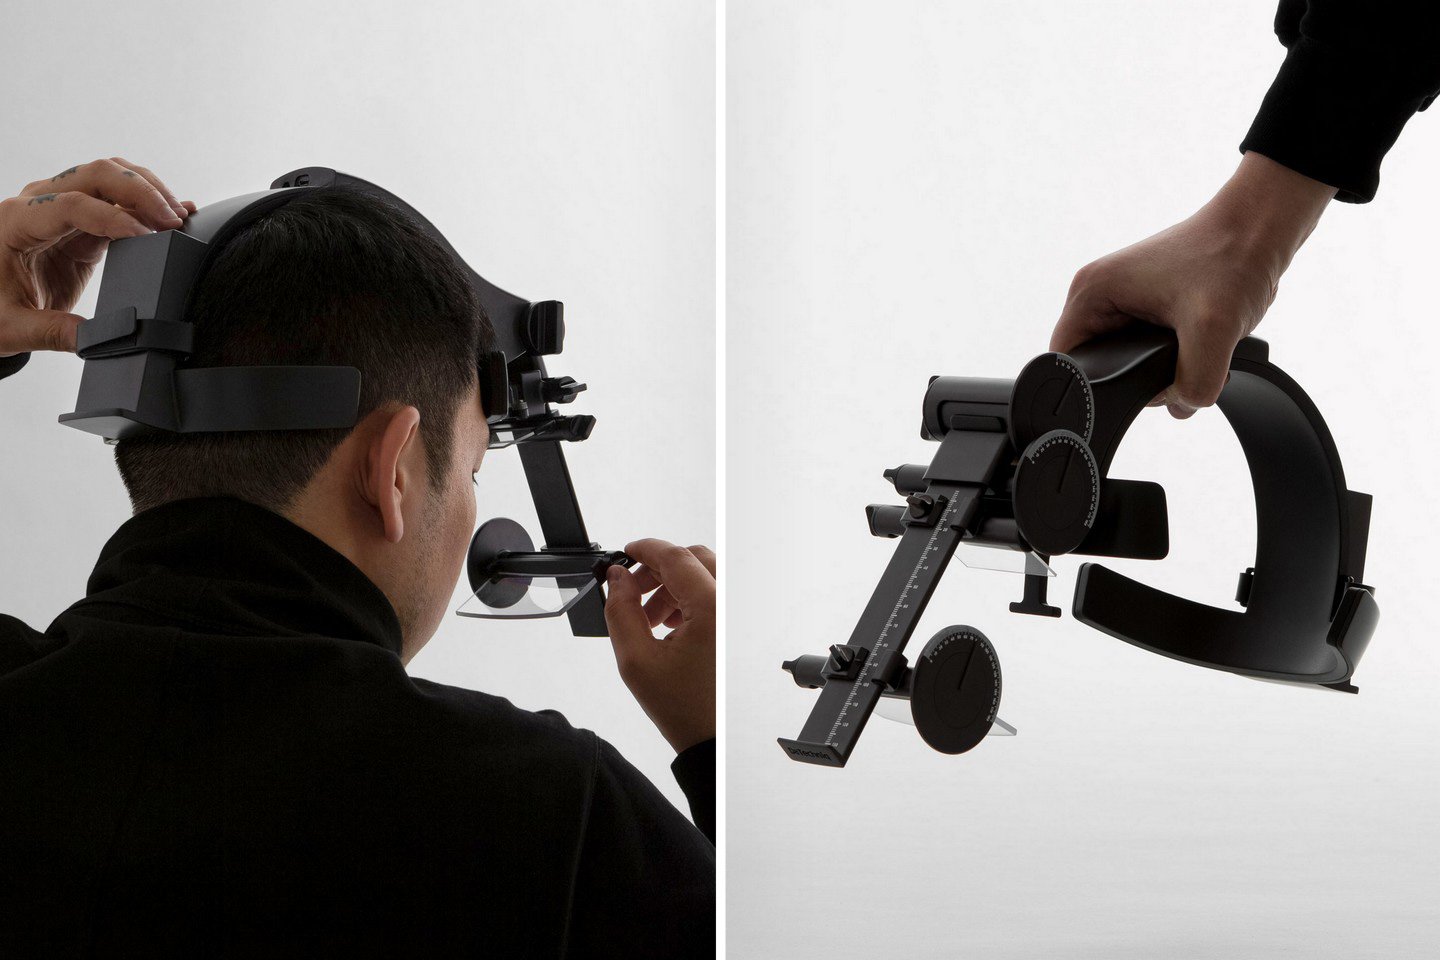 L'instrument de mesure AR a été conçu pour aider à créer de meilleurs écrans de réalité augmentée ergonomiques